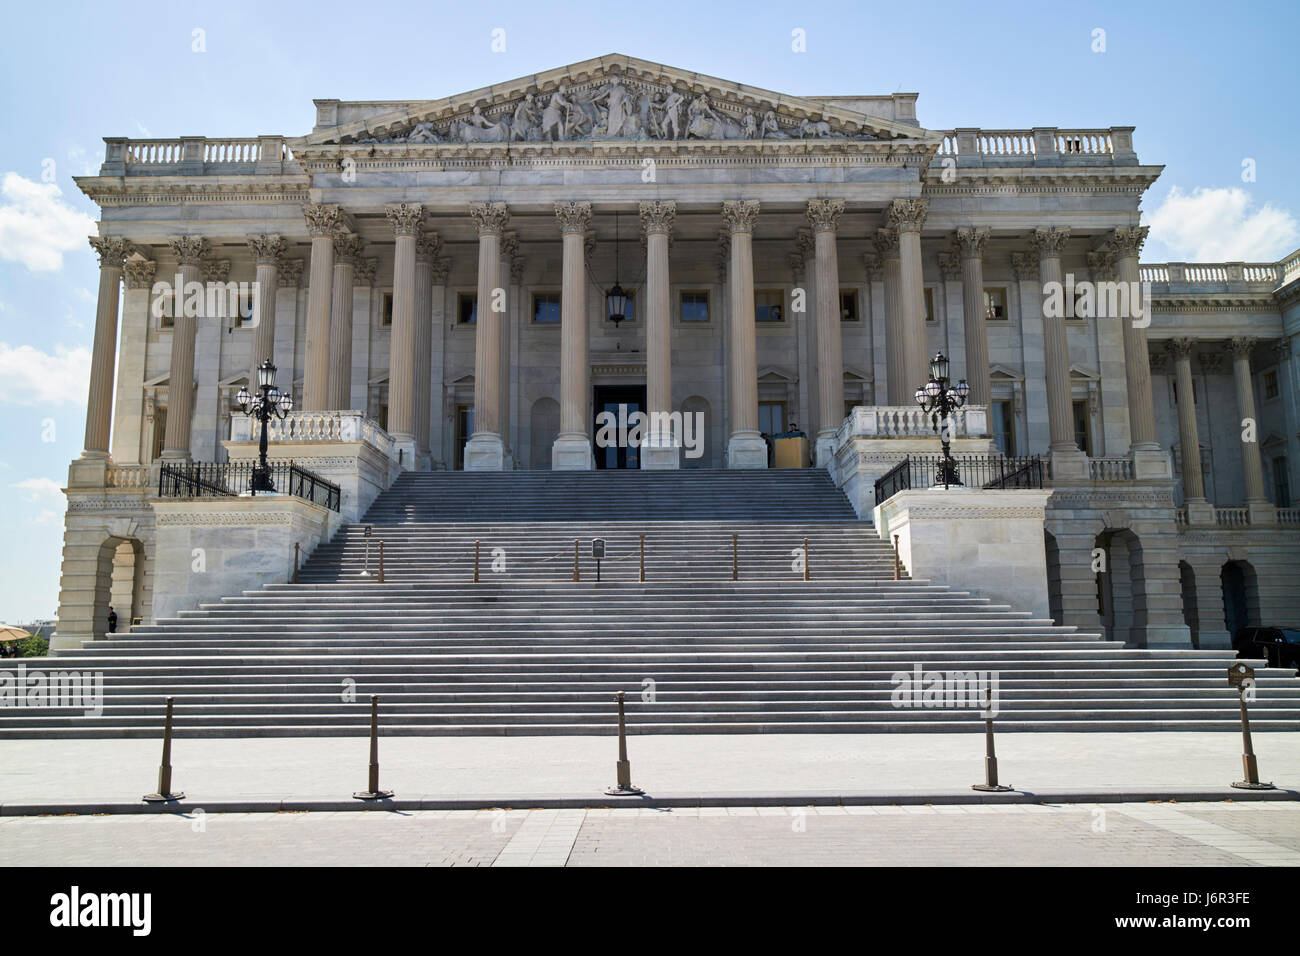 uns der Vertreter in Washington DC USA Vereinigte Staaten Kapitol Gebäude Haus Stockfoto